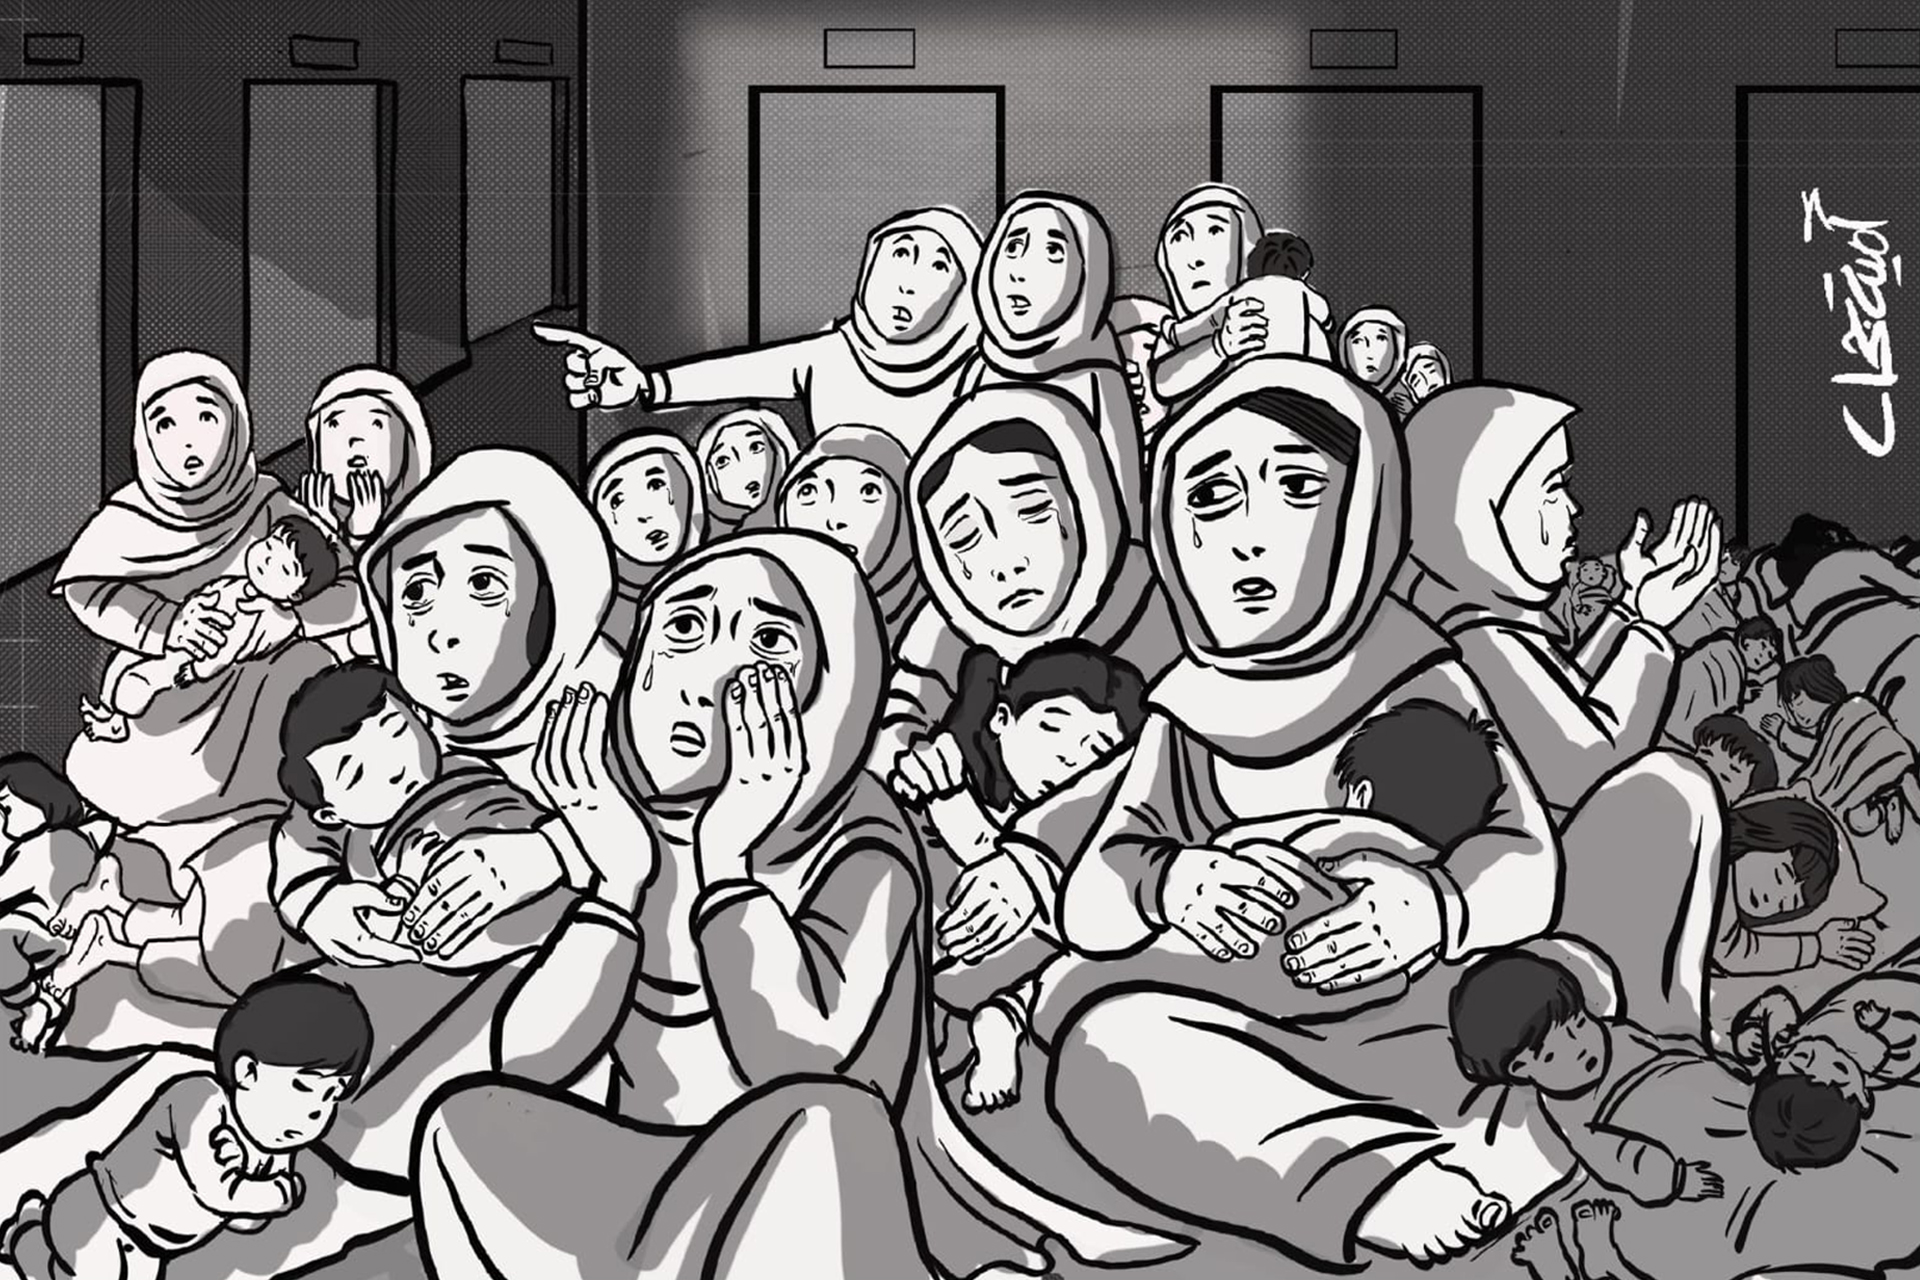 أمية جحا تكتب: يوميات فنانة تشكيلية من غزة نزحت قسرا إلى عنبر الولادة القيصرية (3) | ثقافة – البوكس نيوز